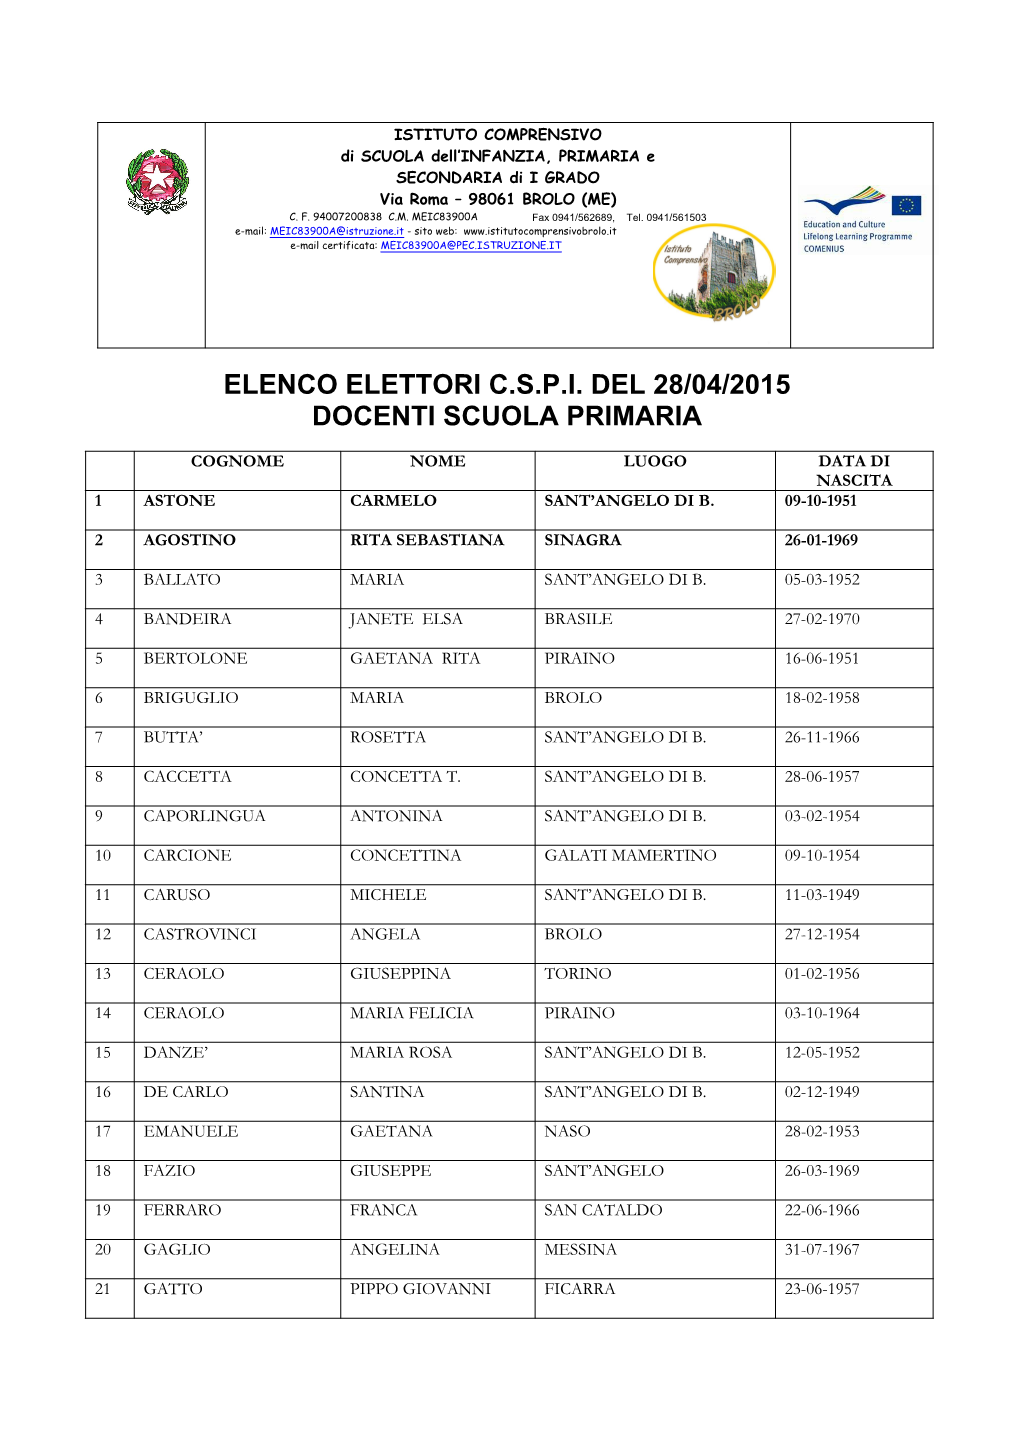 Elenco Elettori C.S.P.I. Del 28/04/2015 Docenti Scuola Primaria